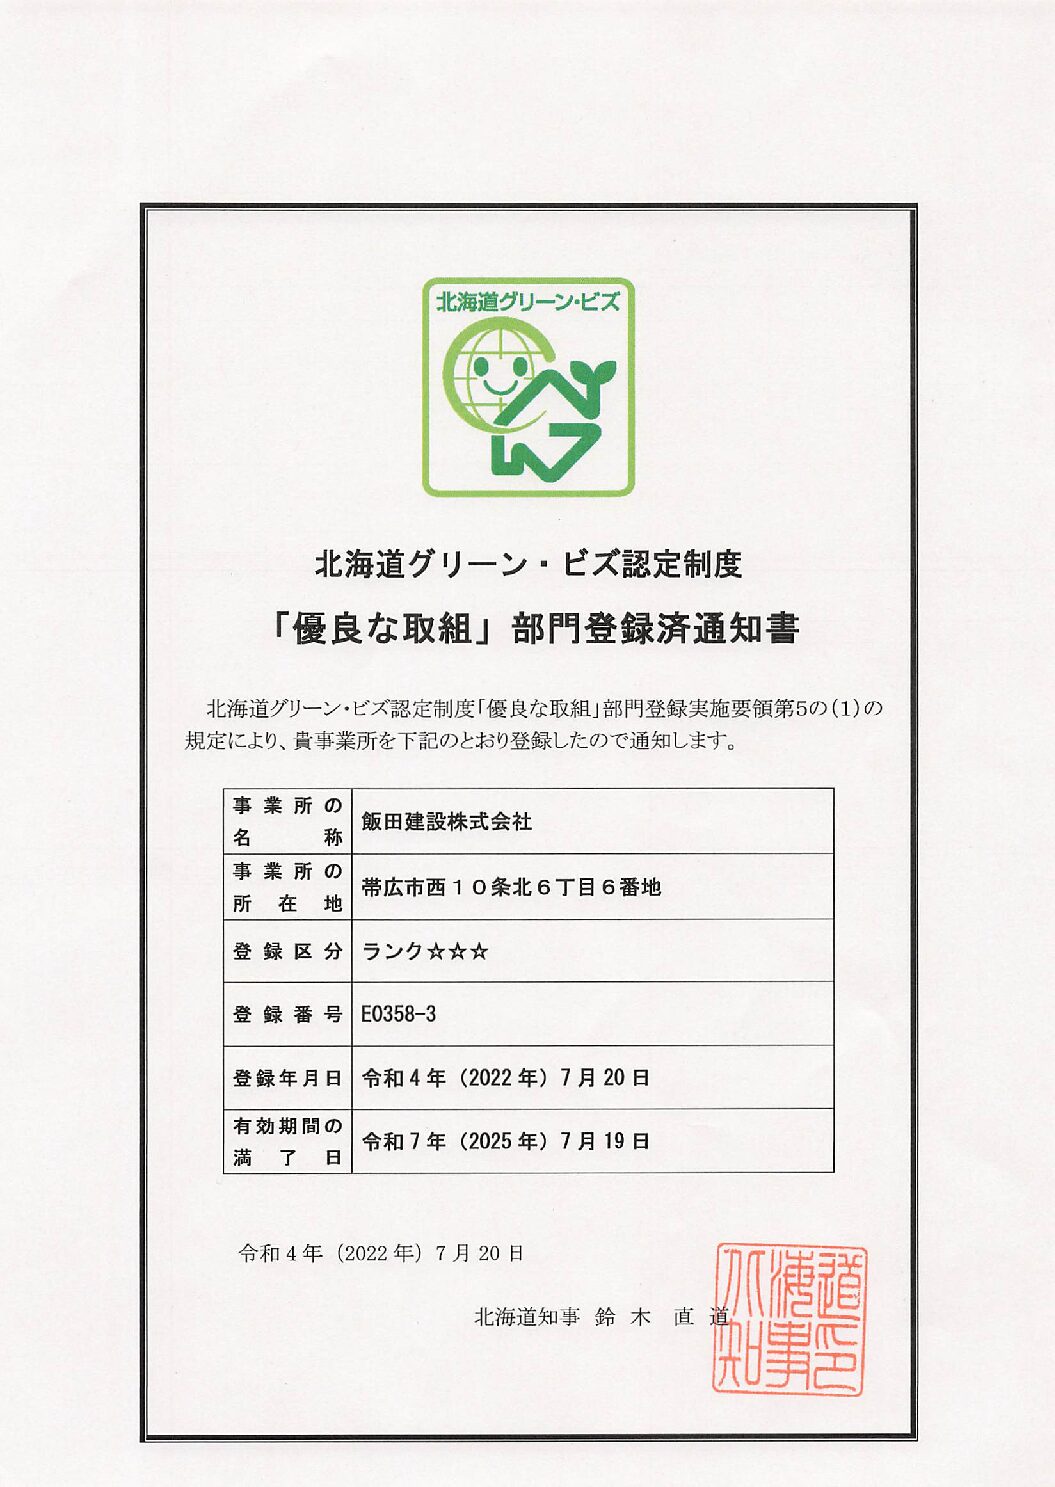 北海道グリーン・ビズ認定制度「優良な取組」部門に登録